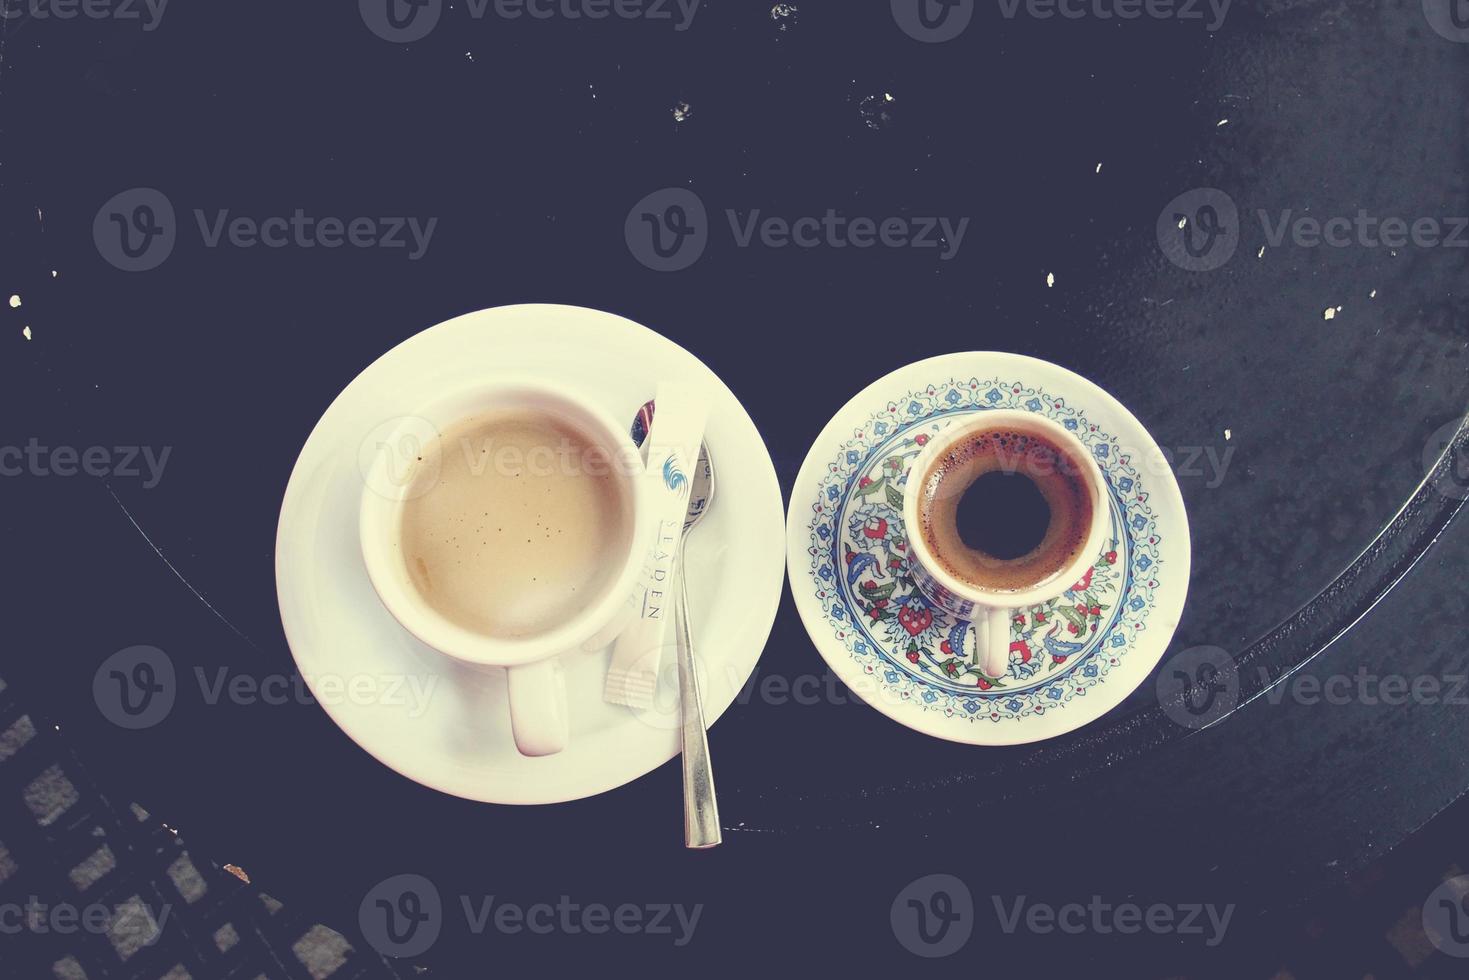 gott varm original- turkiska kaffe eras i en små charmig kopp foto